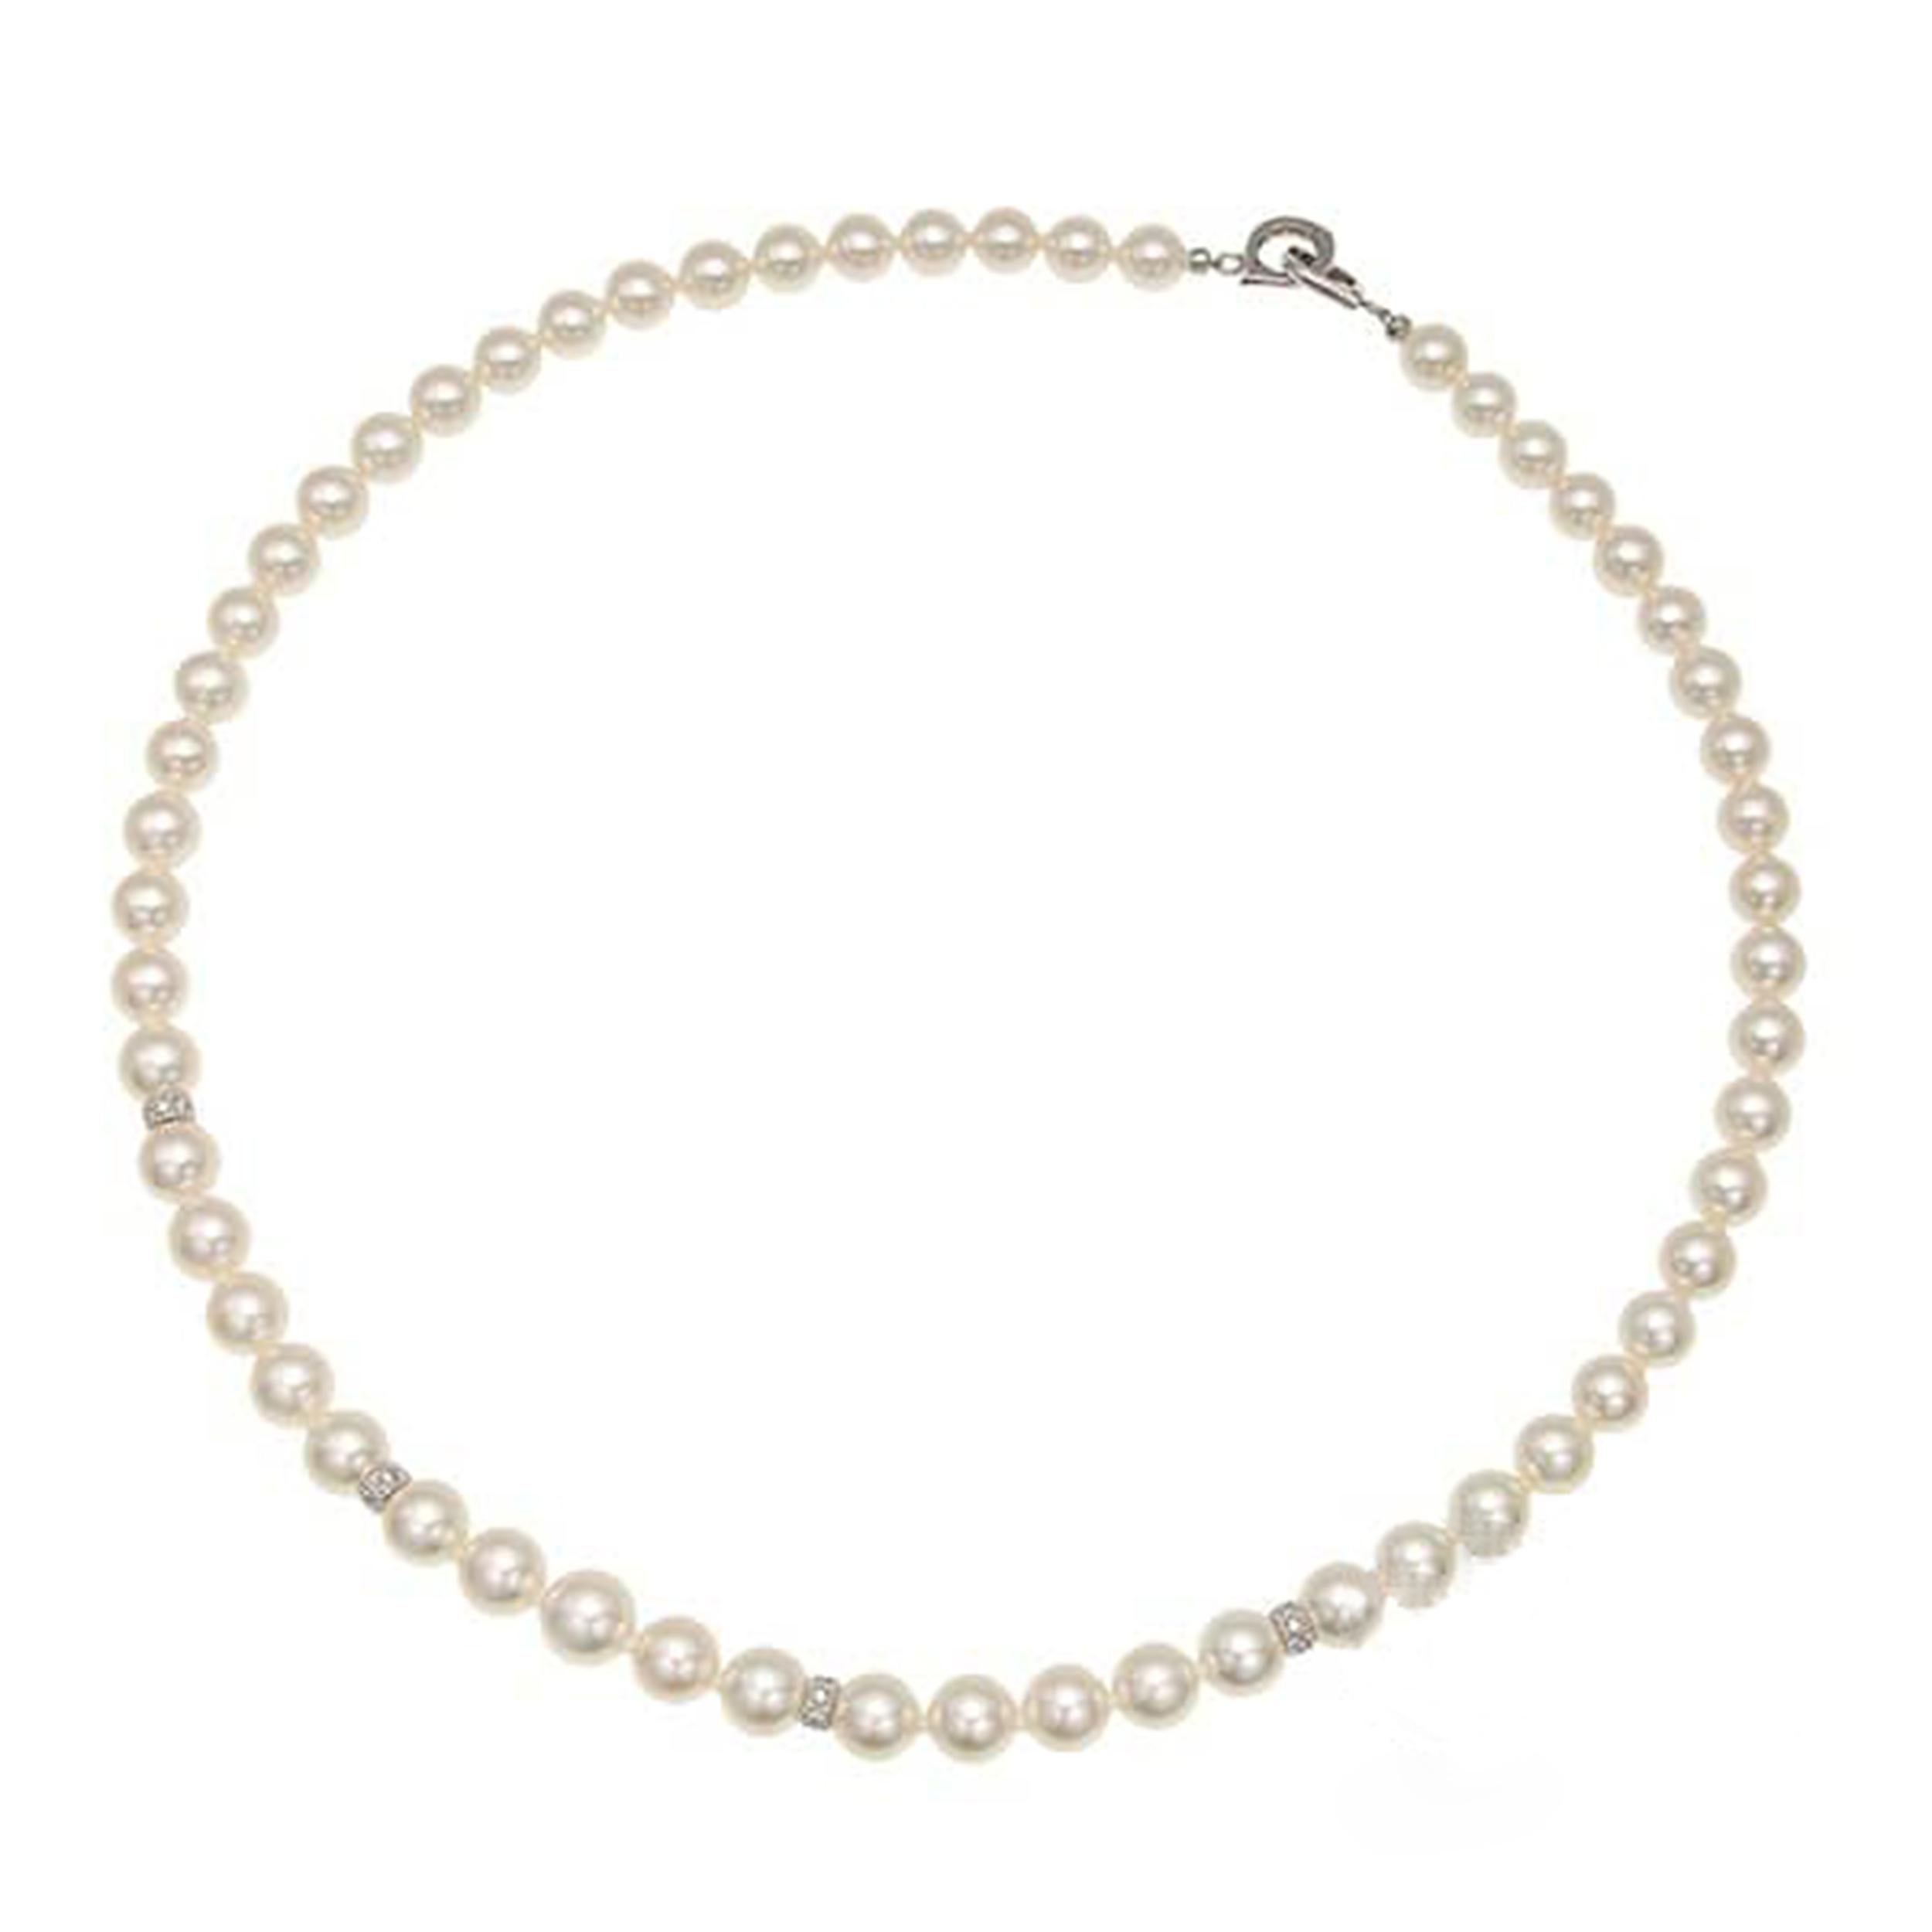 Élevez votre style avec cet élégant collier de perles, une pièce intemporelle qui respire la sophistication et la grâce. Confectionné avec des perles lustrées mesurant environ 6,5 mm, ce collier est parfait pour ajouter une touche de raffinement à